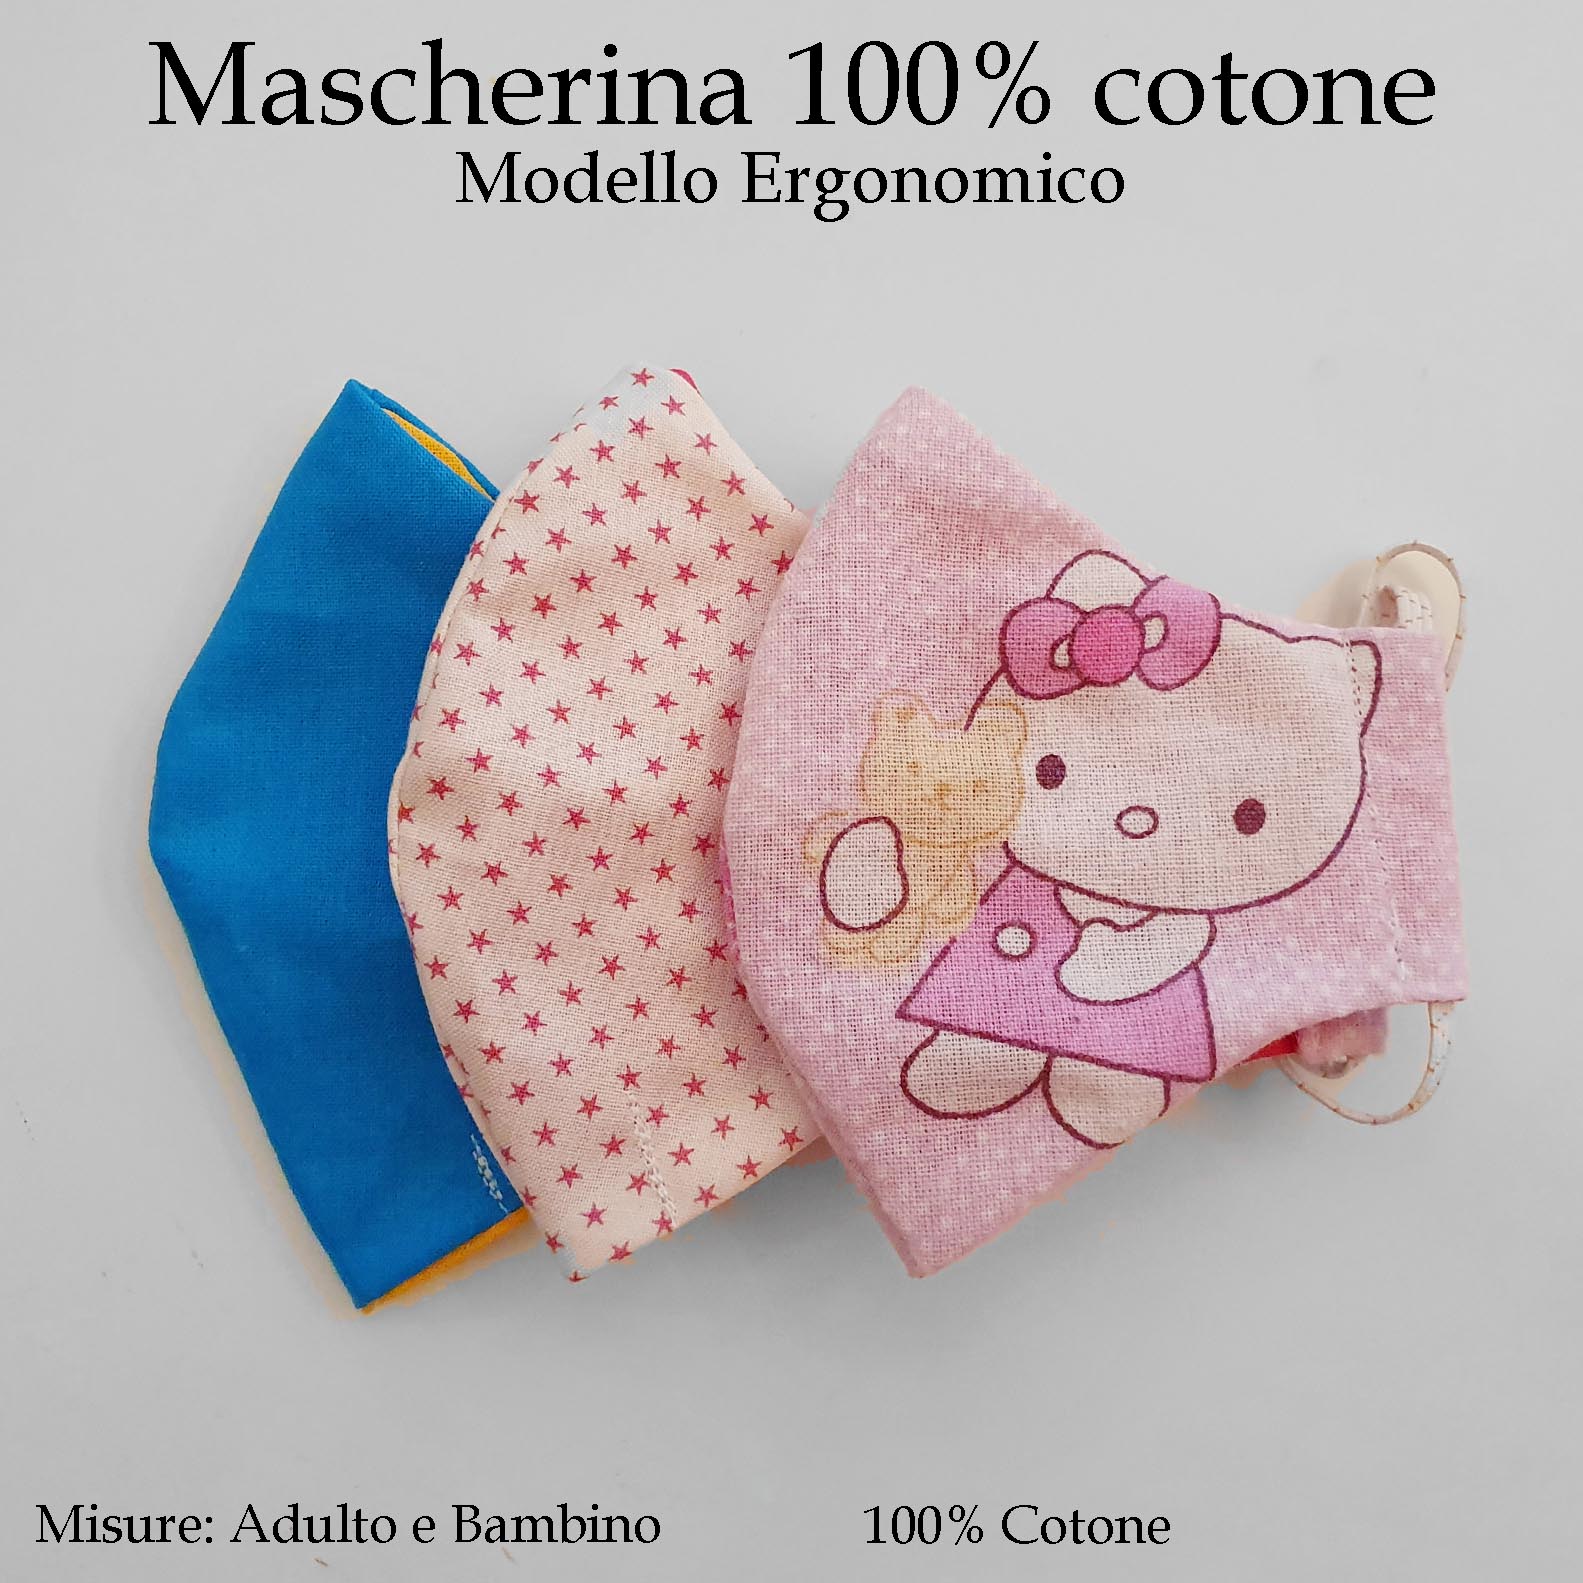 Mascherine lavabili per bambini in vari colori, 100% cotone 2-6